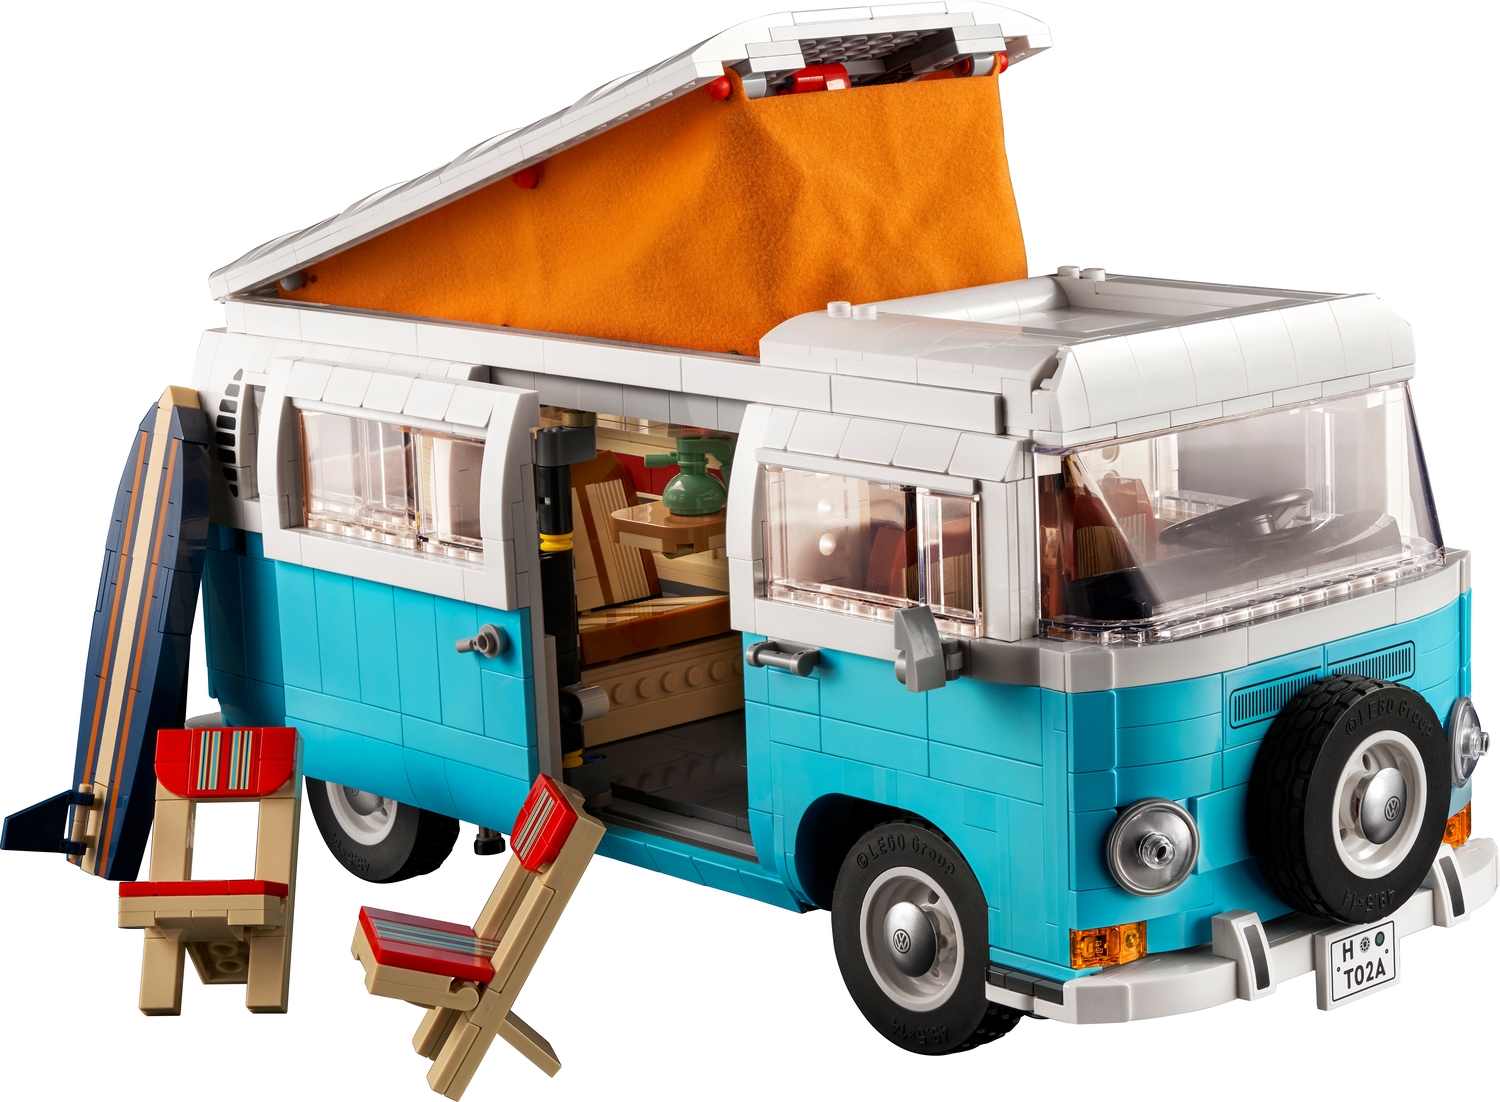 LEGO Creator Volkswagen T2 Van - Imagine That Toys